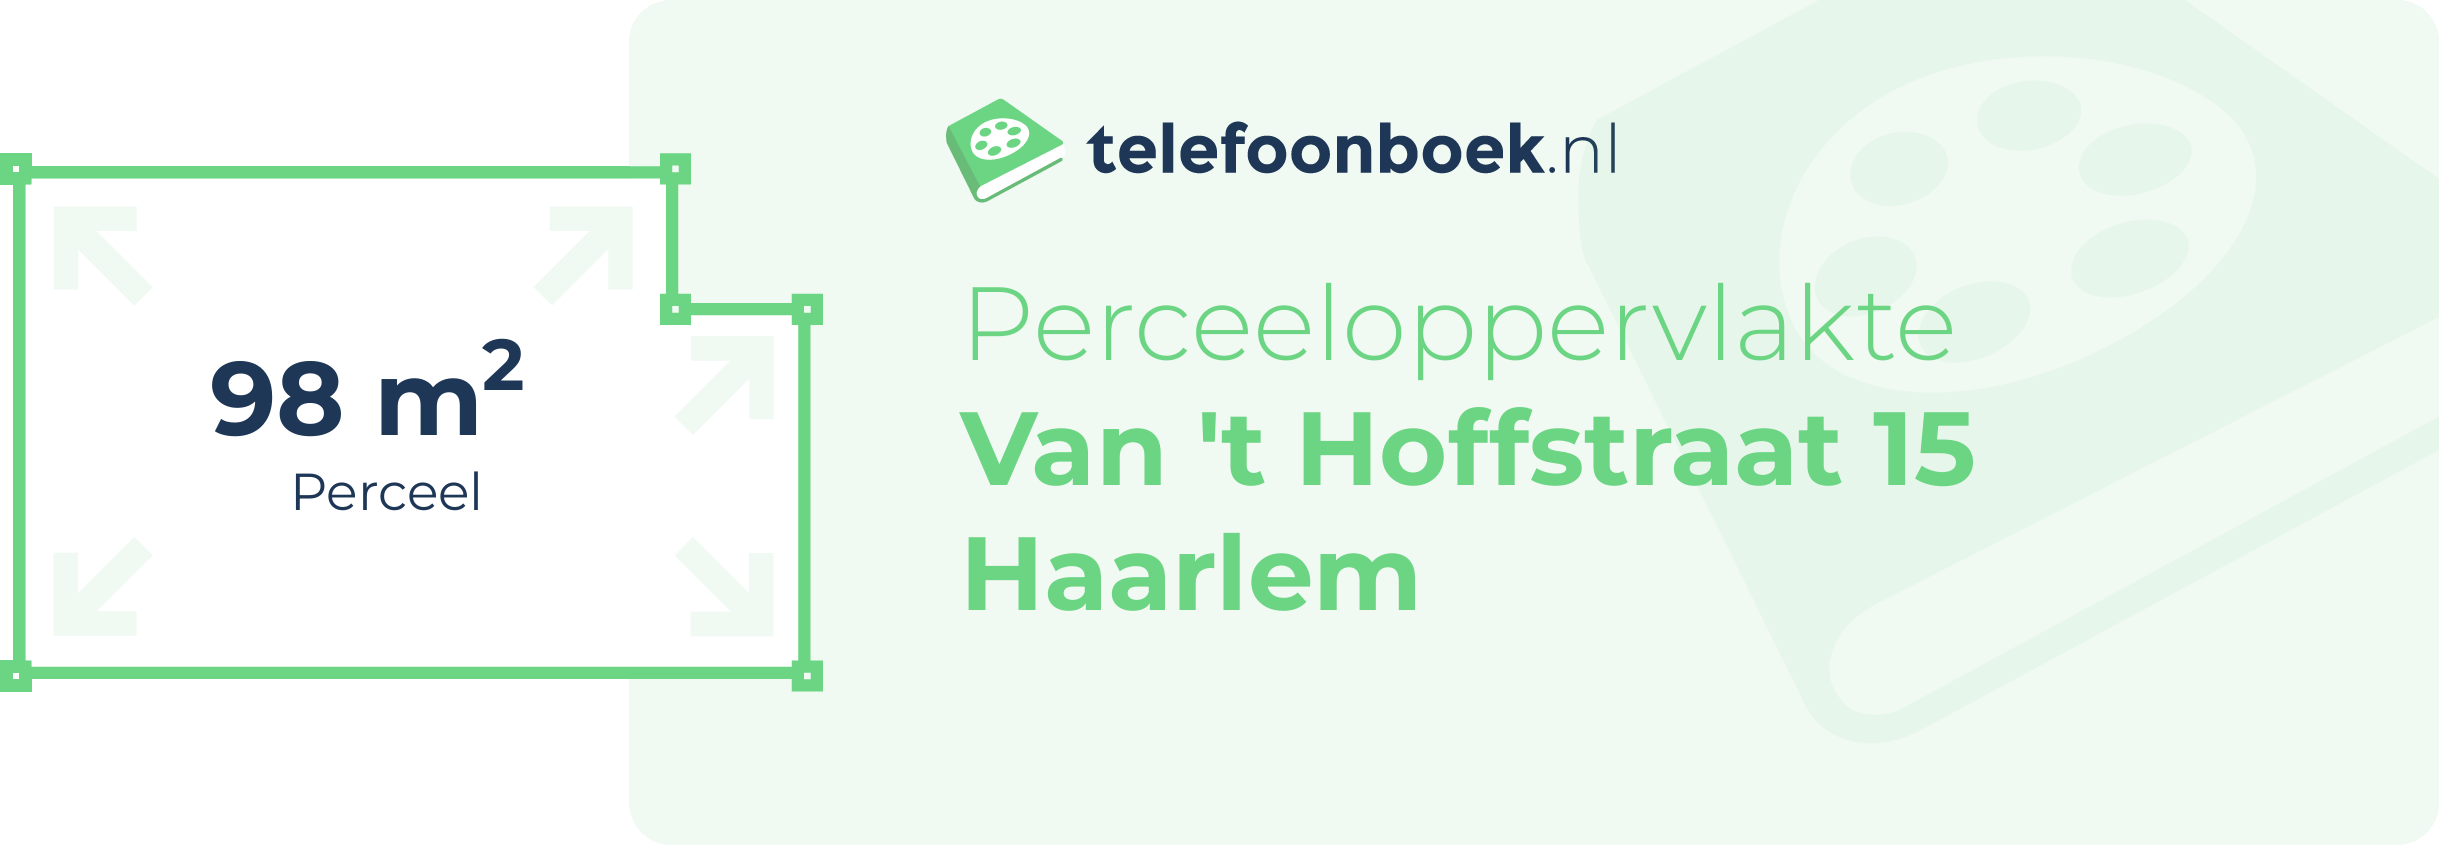 Perceeloppervlakte Van 't Hoffstraat 15 Haarlem